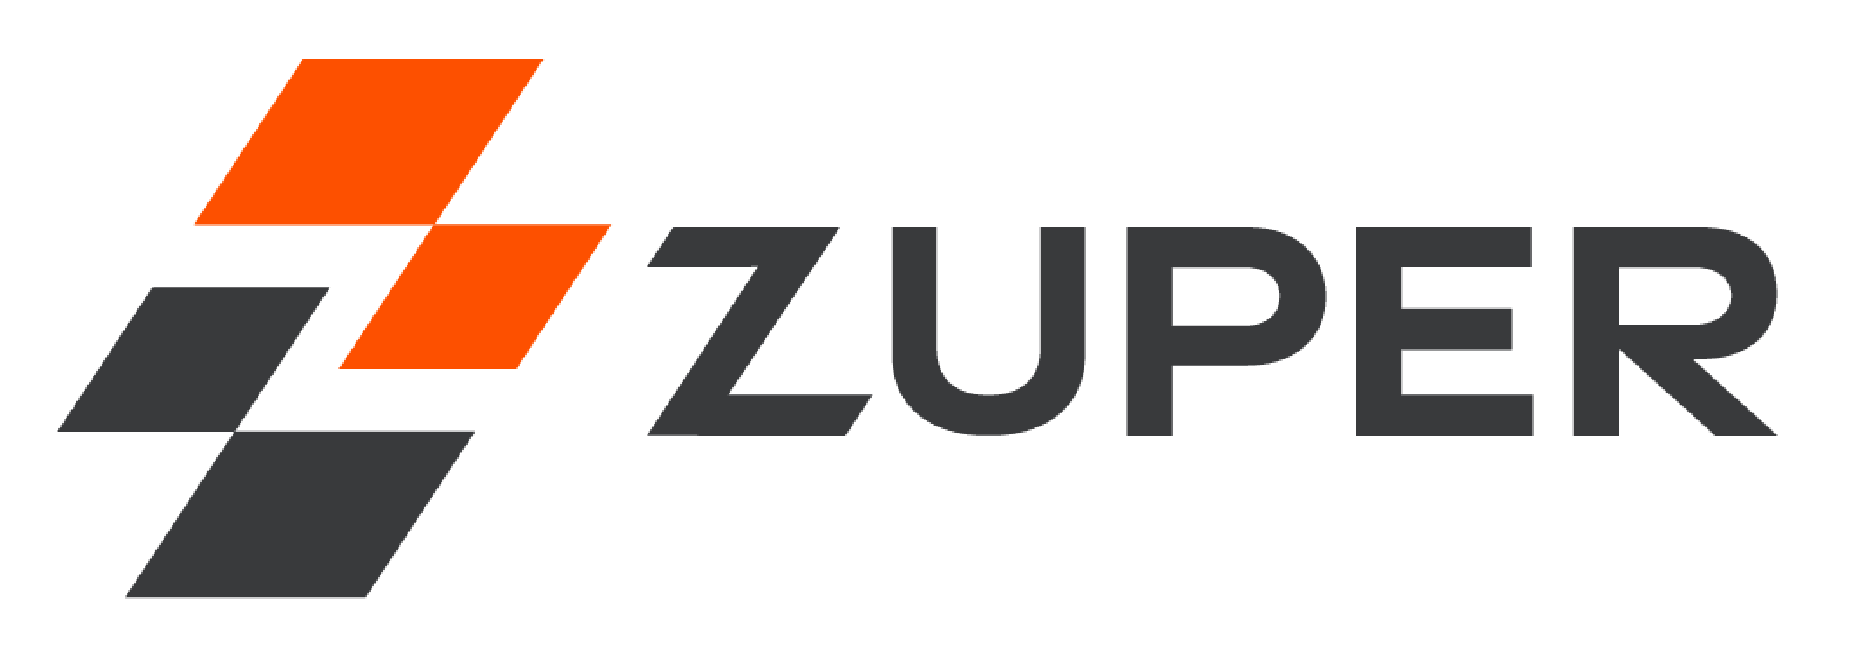 zuper-logo-01